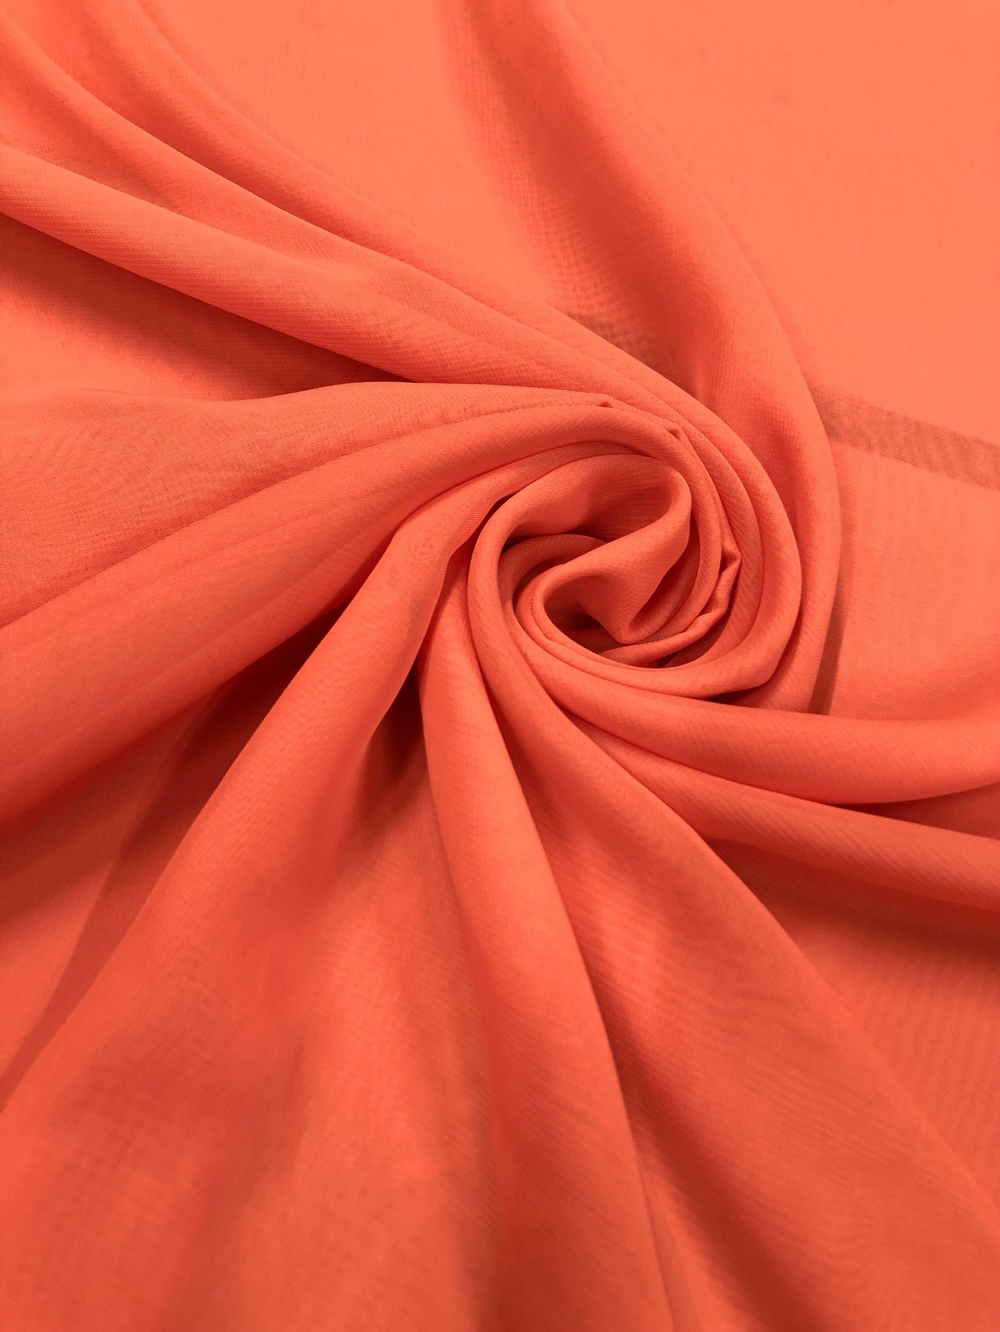 Ткань Шифон светло-оранжевый арт. 122105